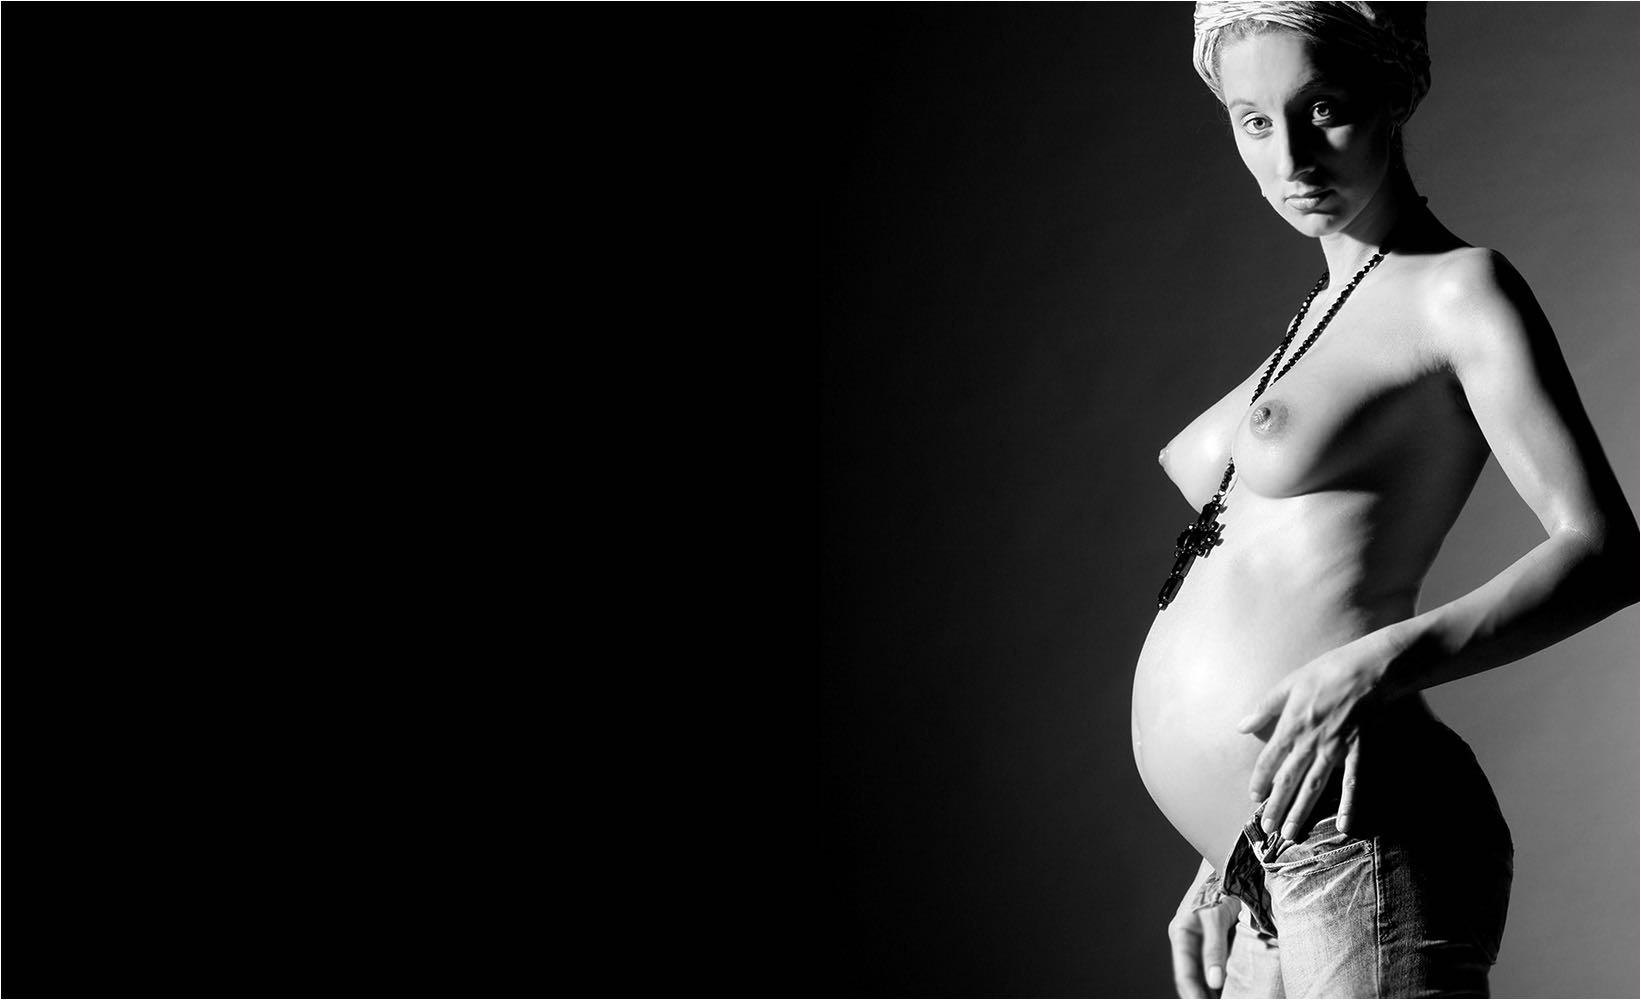  Schwangeren & Babyfotografie. Erotisches Portrait einer schwangeren Frau als Halbaktaufnahme. Aufgenommen mit Studioblitzanlage und digitaler Kleinbildtechnik mit 21 Mio Pixel Auflösung. Copyright by Fotostudio Jörg Riethausen 